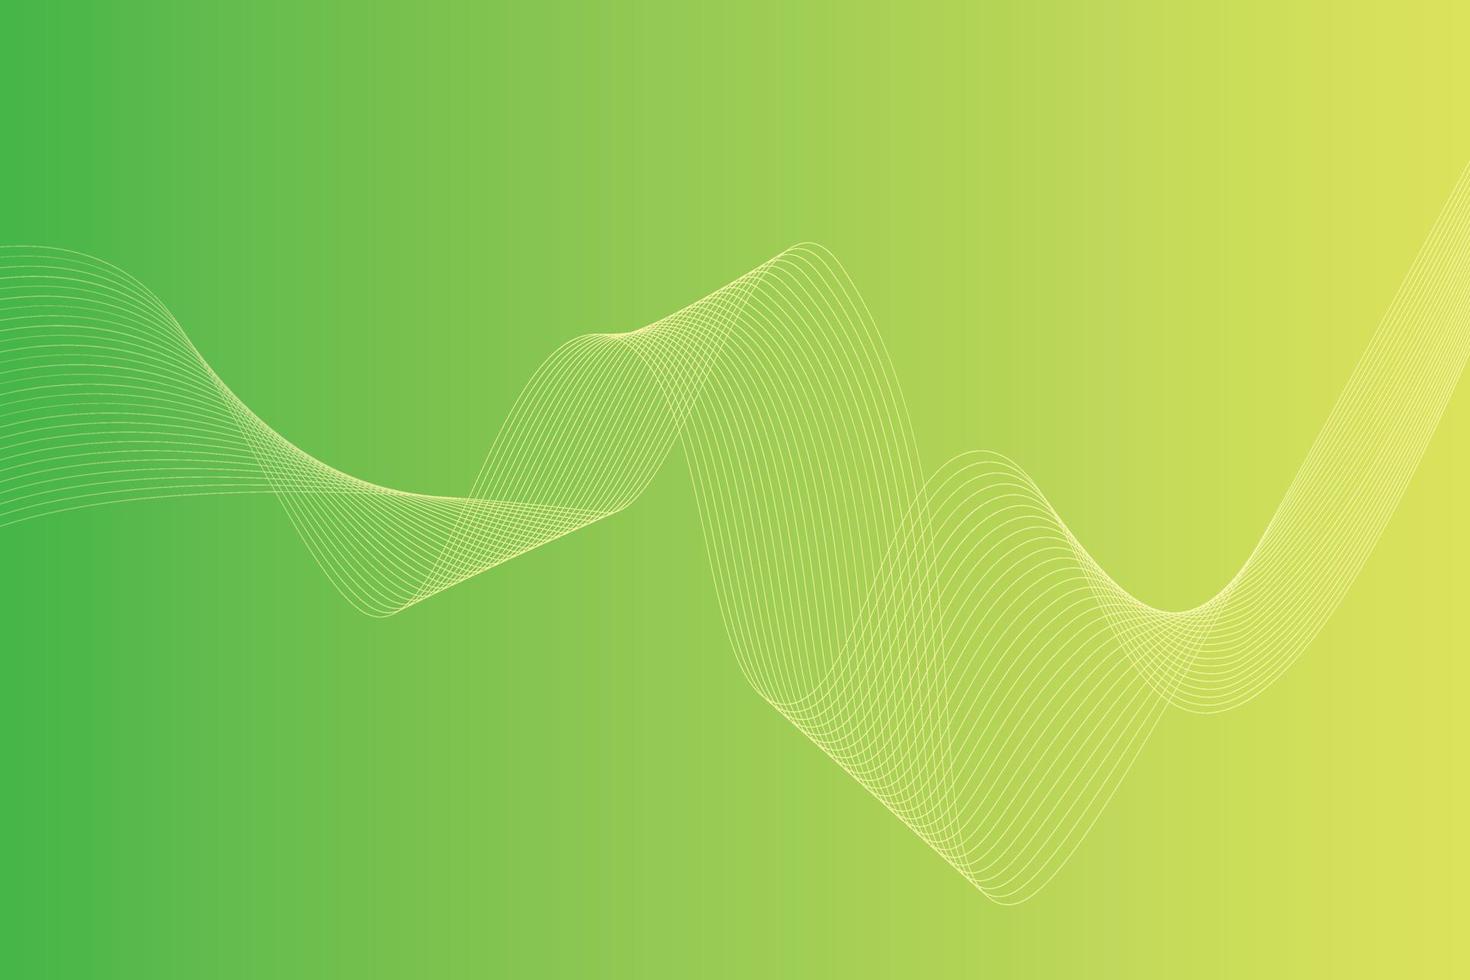 abstrakter Hintergrund mit bunten Wellenlinien. abstraktes grün-gelbes Farbverlauf-Hintergrunddesign vektor